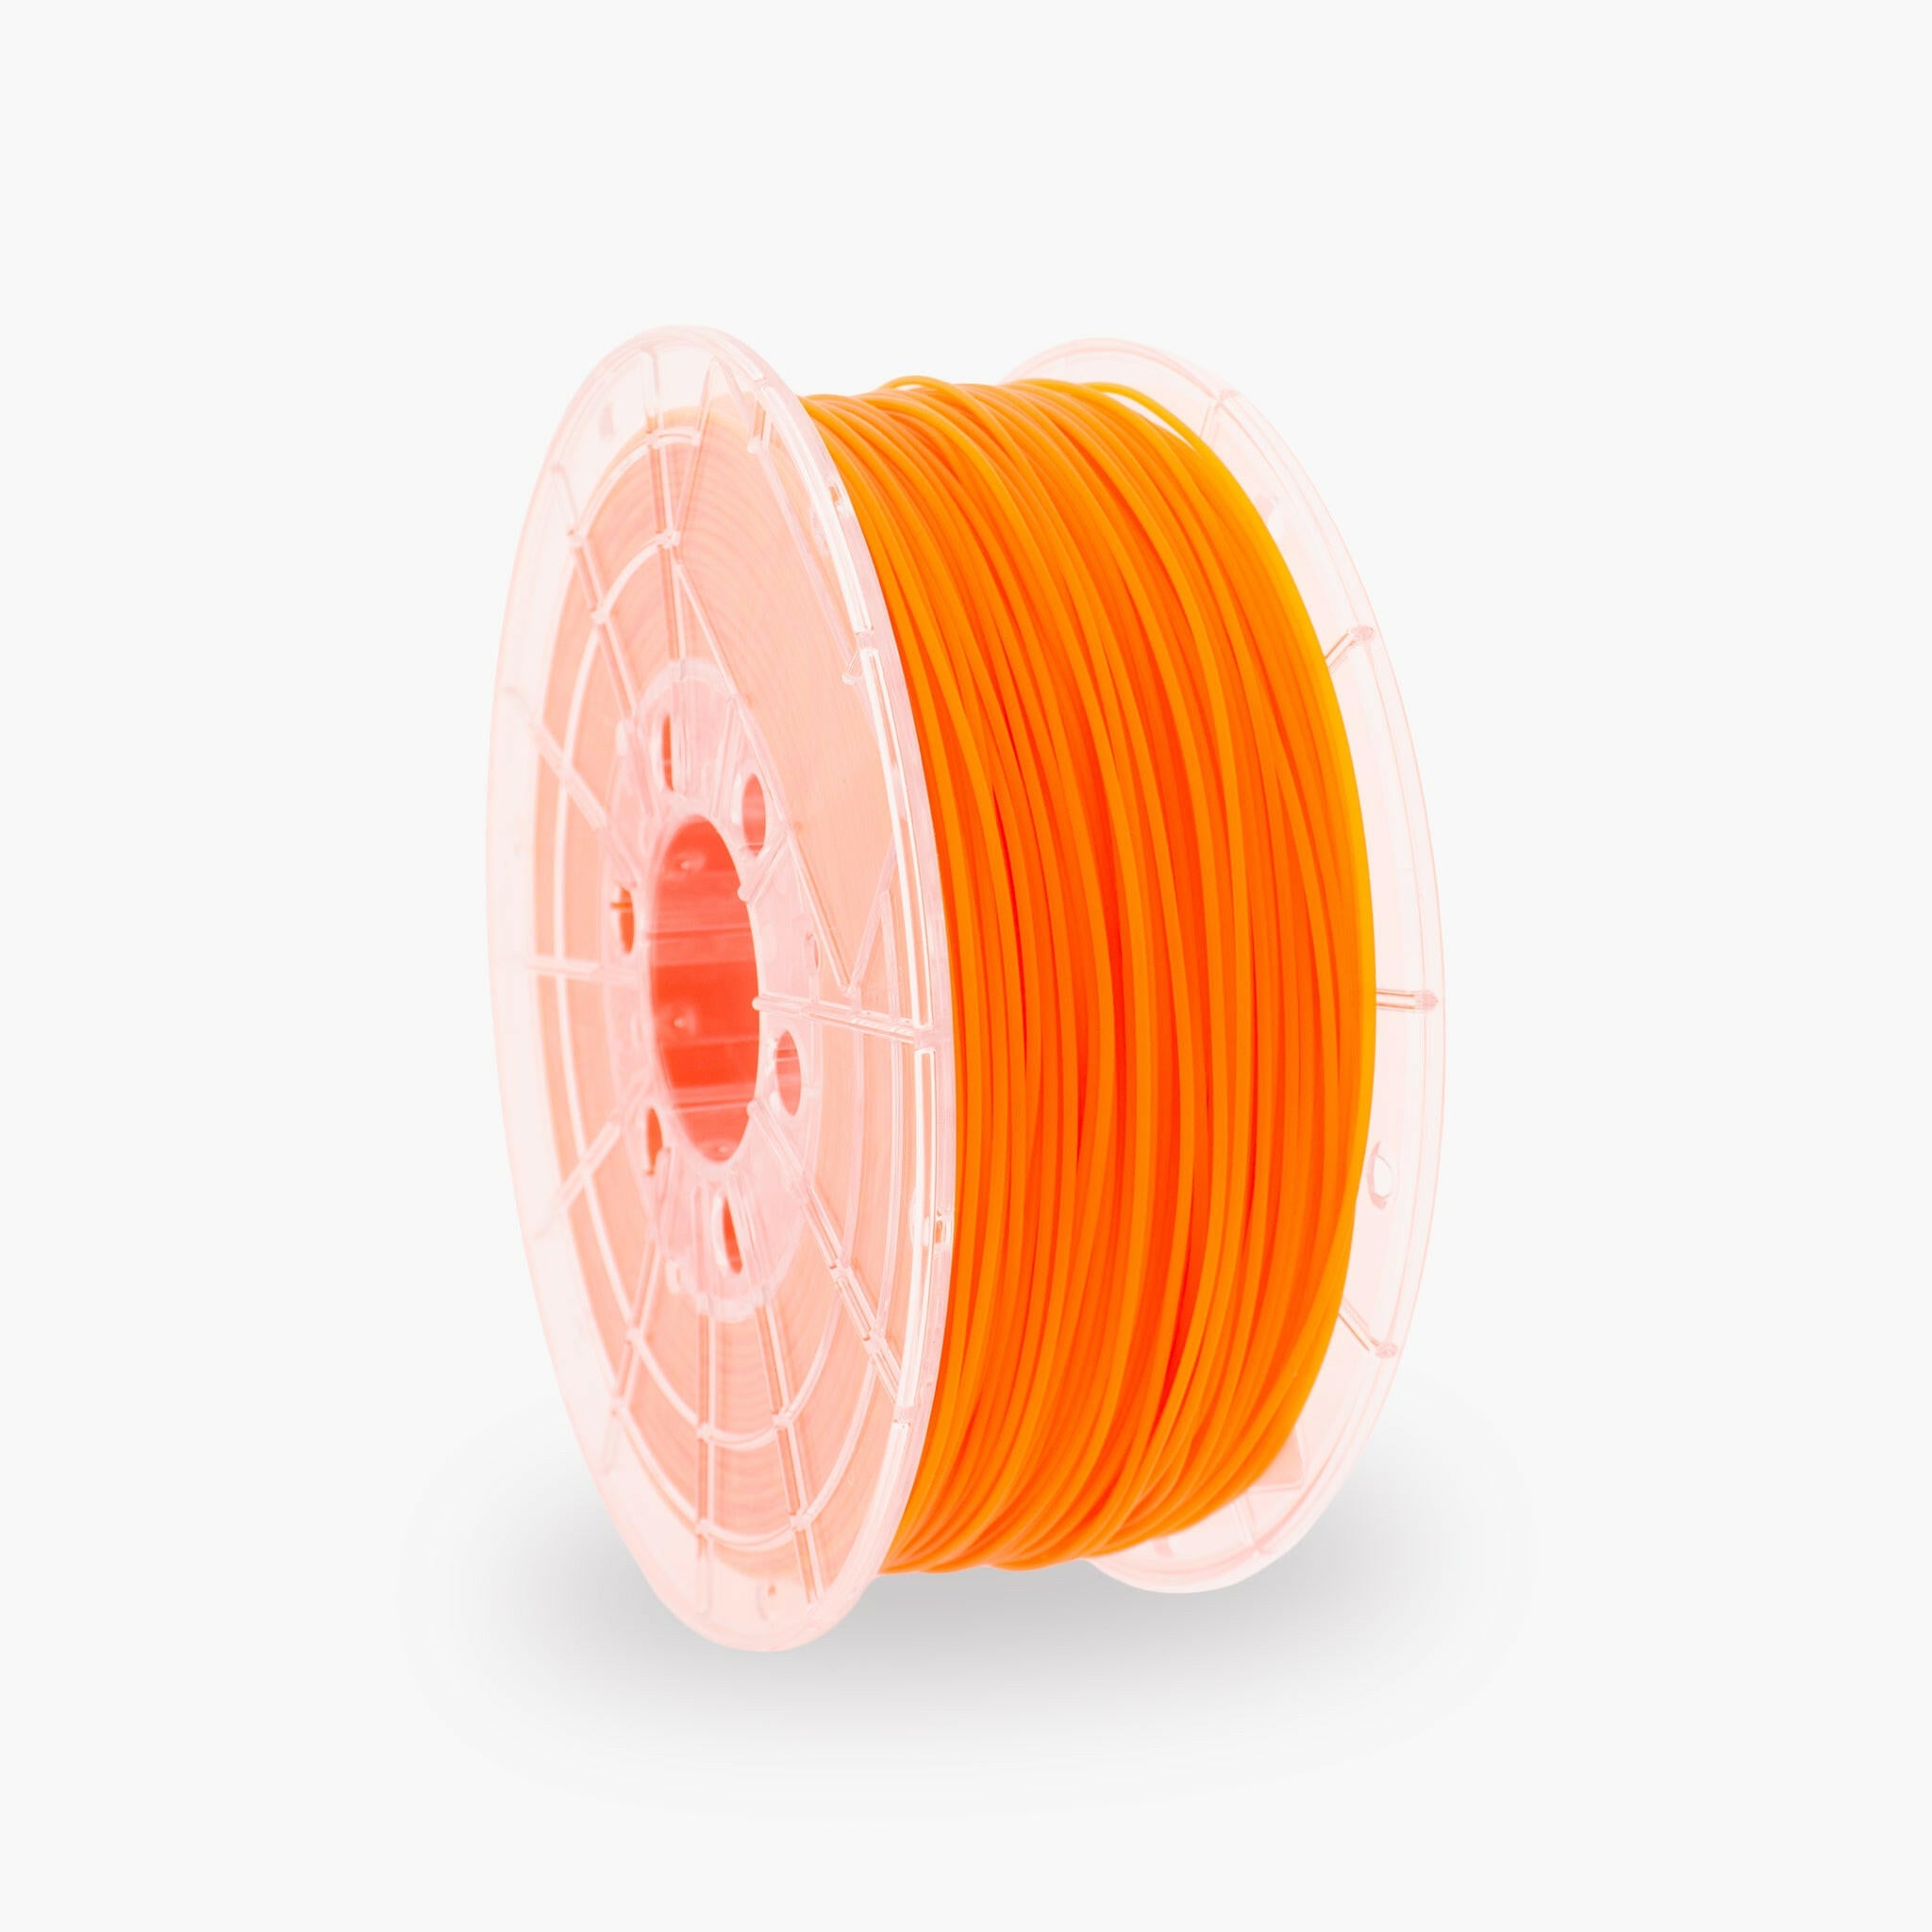 PETG – Fluoreszierendes Orange